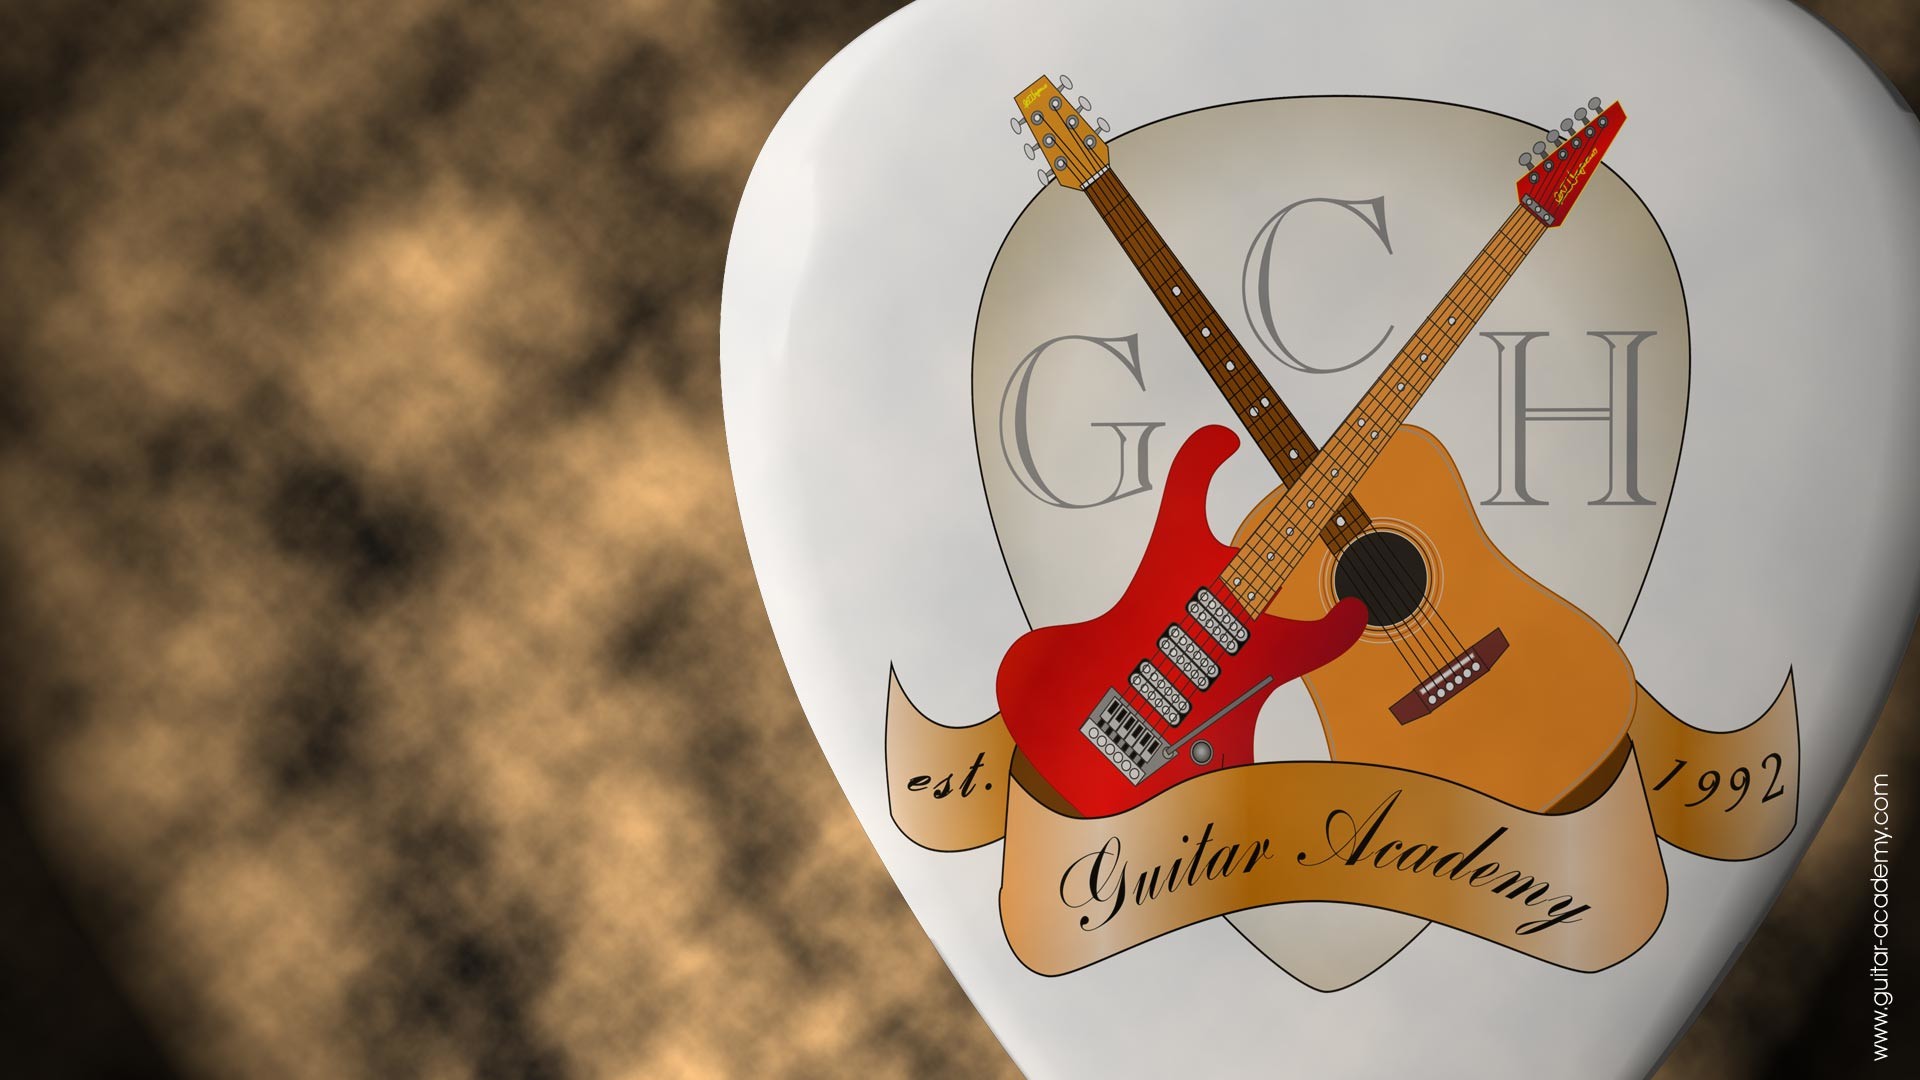 1920x1080 Guitar wallpaper, GCH Guitar Academy 3D logo